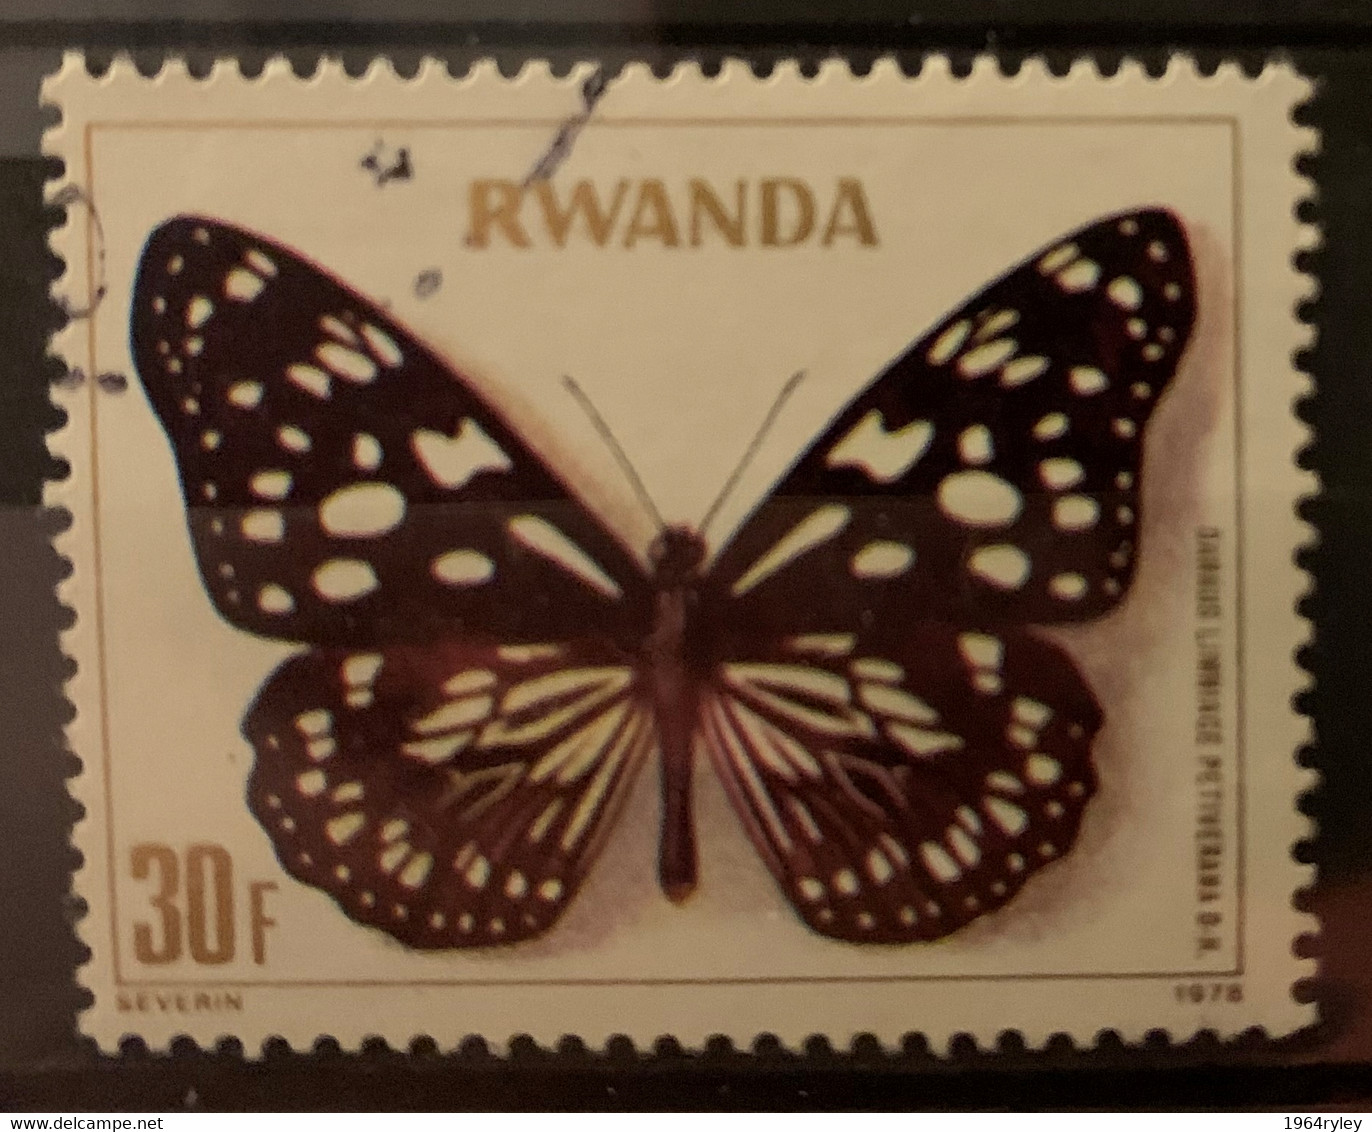 RWANDA  - (0)  - 1979 - # 906 - Gebruikt